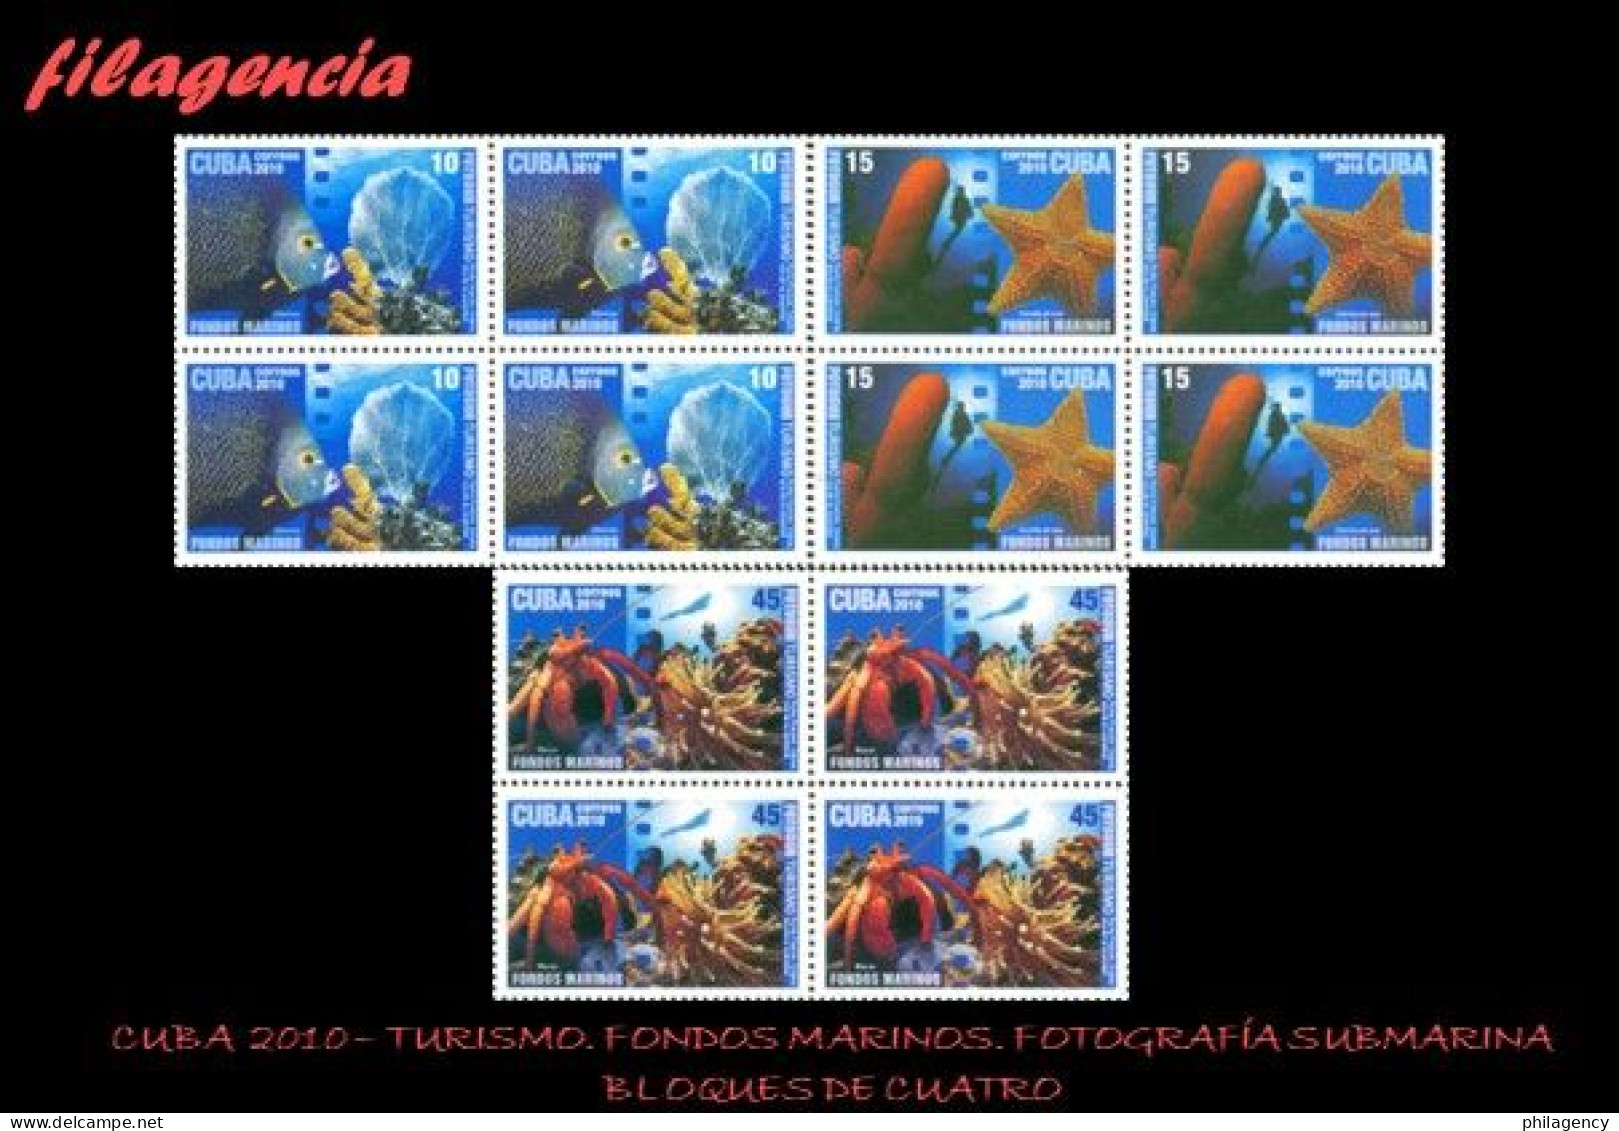 CUBA. BLOQUES DE CUATRO. 2010-11 TURISMO. FONDOS MARINOS. FOTOGRAFÍA SUBMARINA. PRIMERA SERIE - Unused Stamps